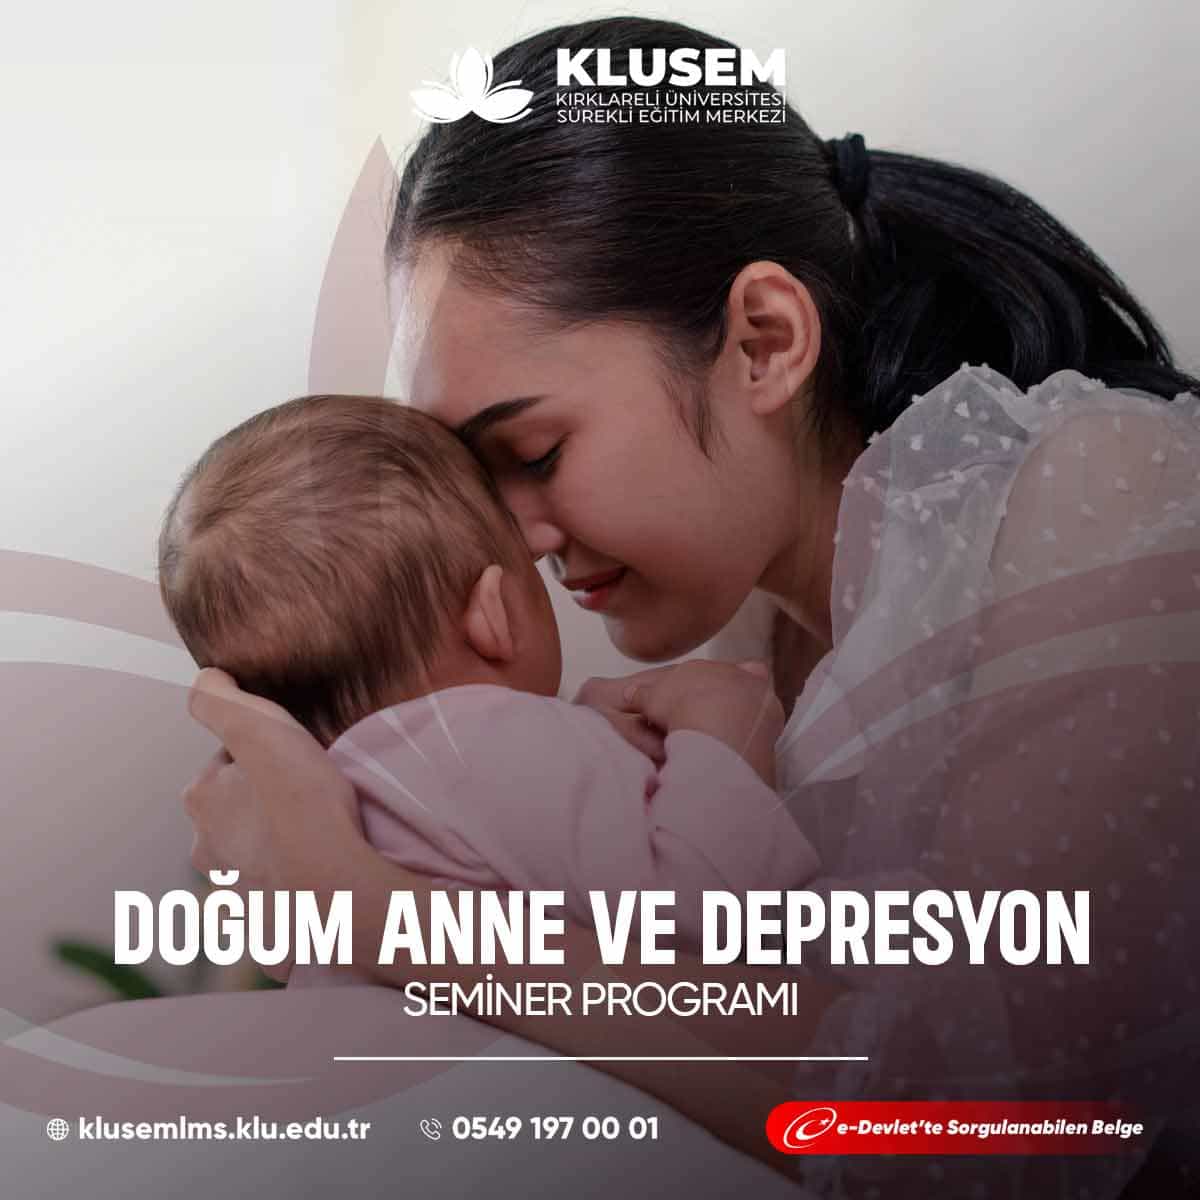 Doğum sonrası annelerde depresyon, doğumdan sonraki duygusal dalgalanmalarla ilişkilidir.